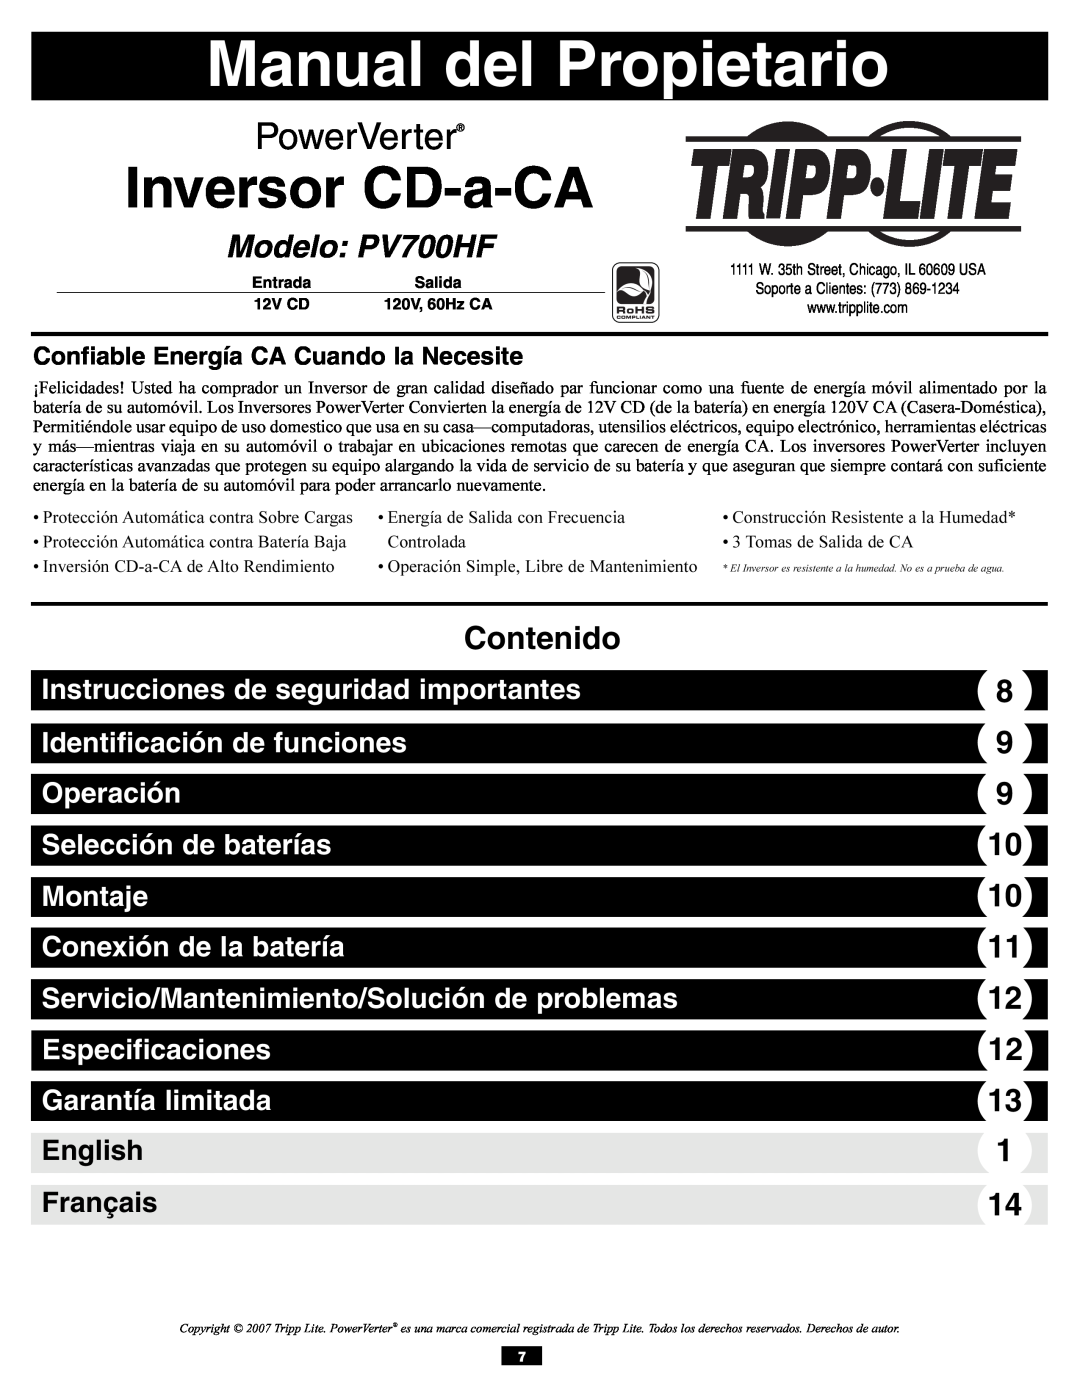 Tripp Lite Manual del Propietario, Inversor CD-a-CA, Modelo PV700HF, Contenido, Instrucciones de seguridad importantes 